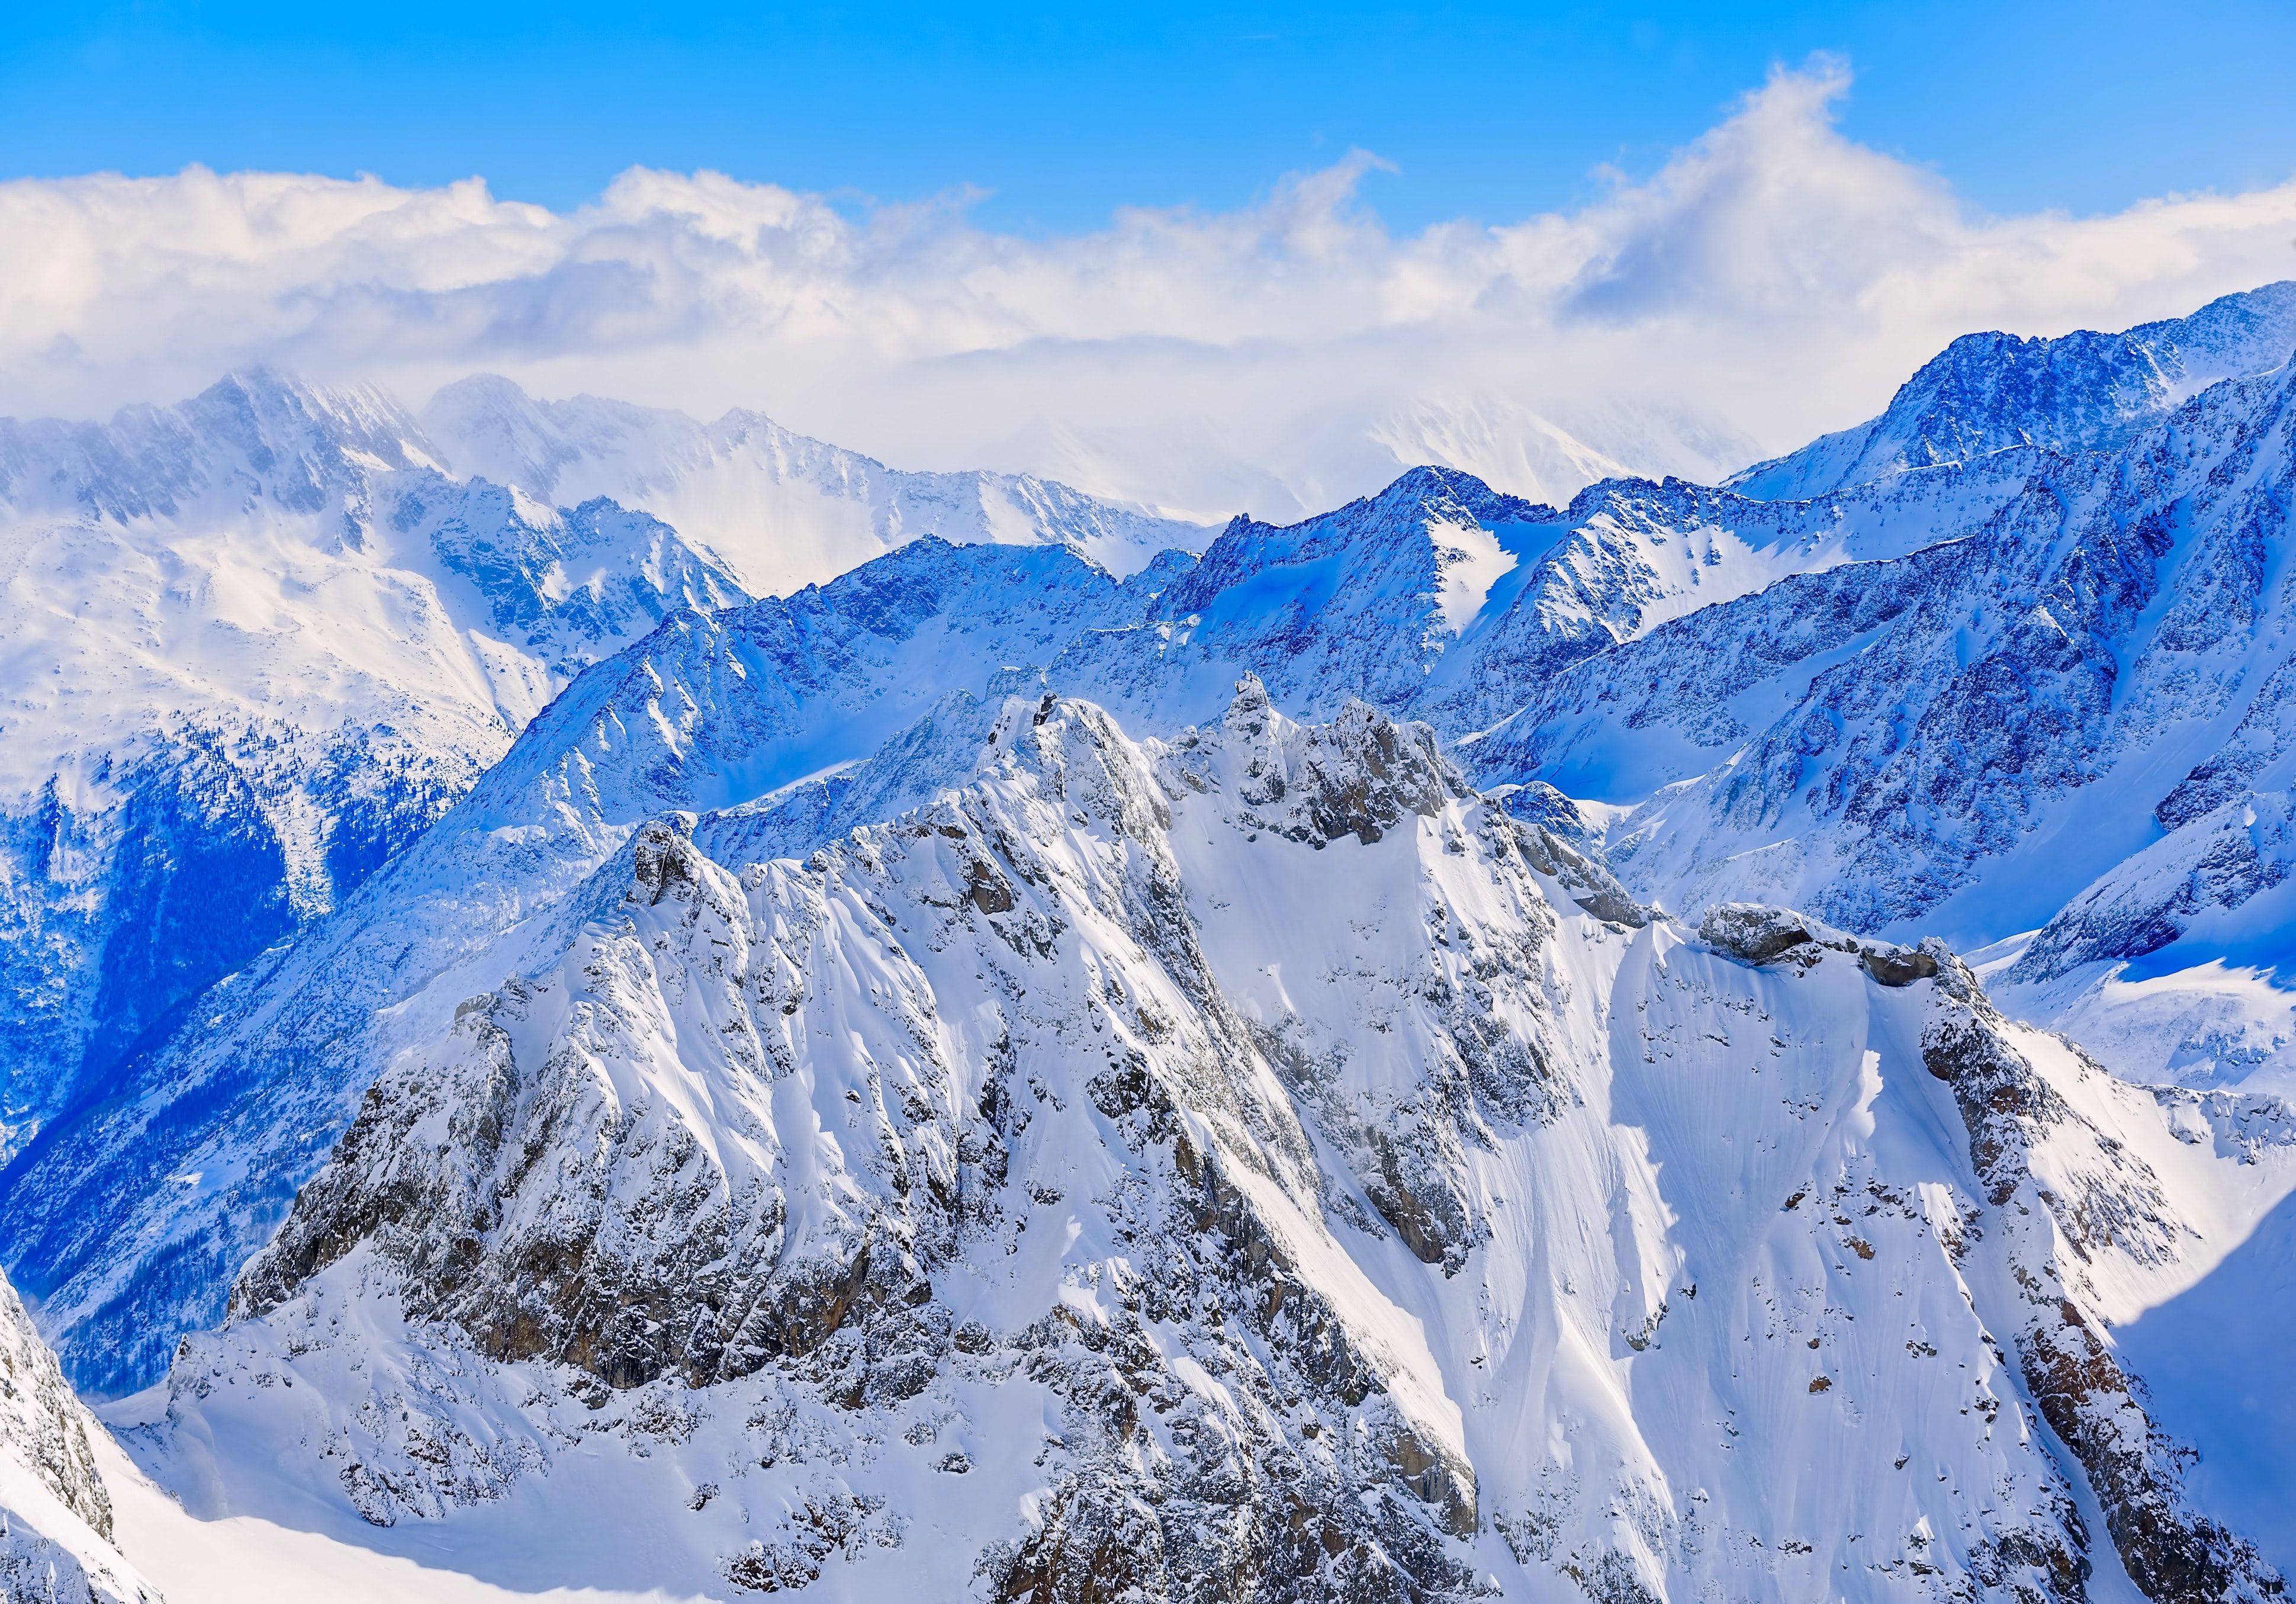  Alpen Hintergrundbild 3878x2710. 1.Alpen Bilder Und Fotos · Kostenlos Downloaden · Stock Fotos